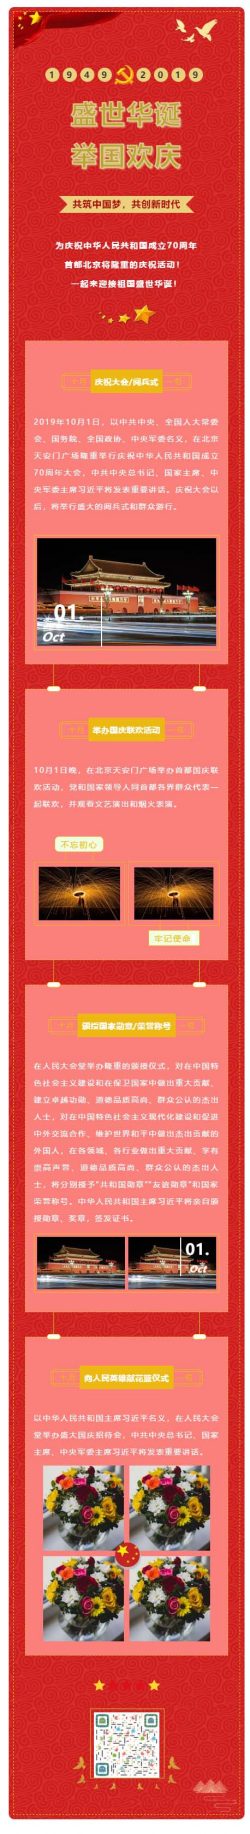 庆祝中华人民共和国成立70周年大会国庆节红色微信公众号图文模板